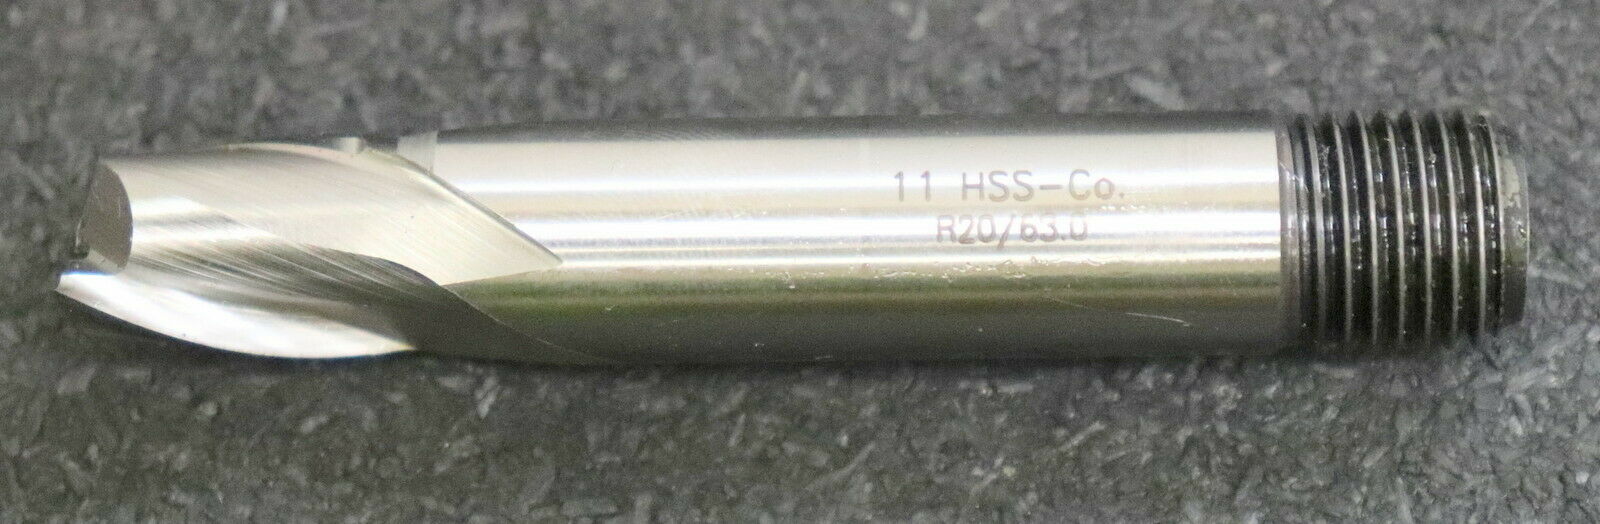 CLARKSON Schaftfräser mit Gewinde R20/63442924 10PM22 HSSE-Co8 Ø11mm 2-Schneider